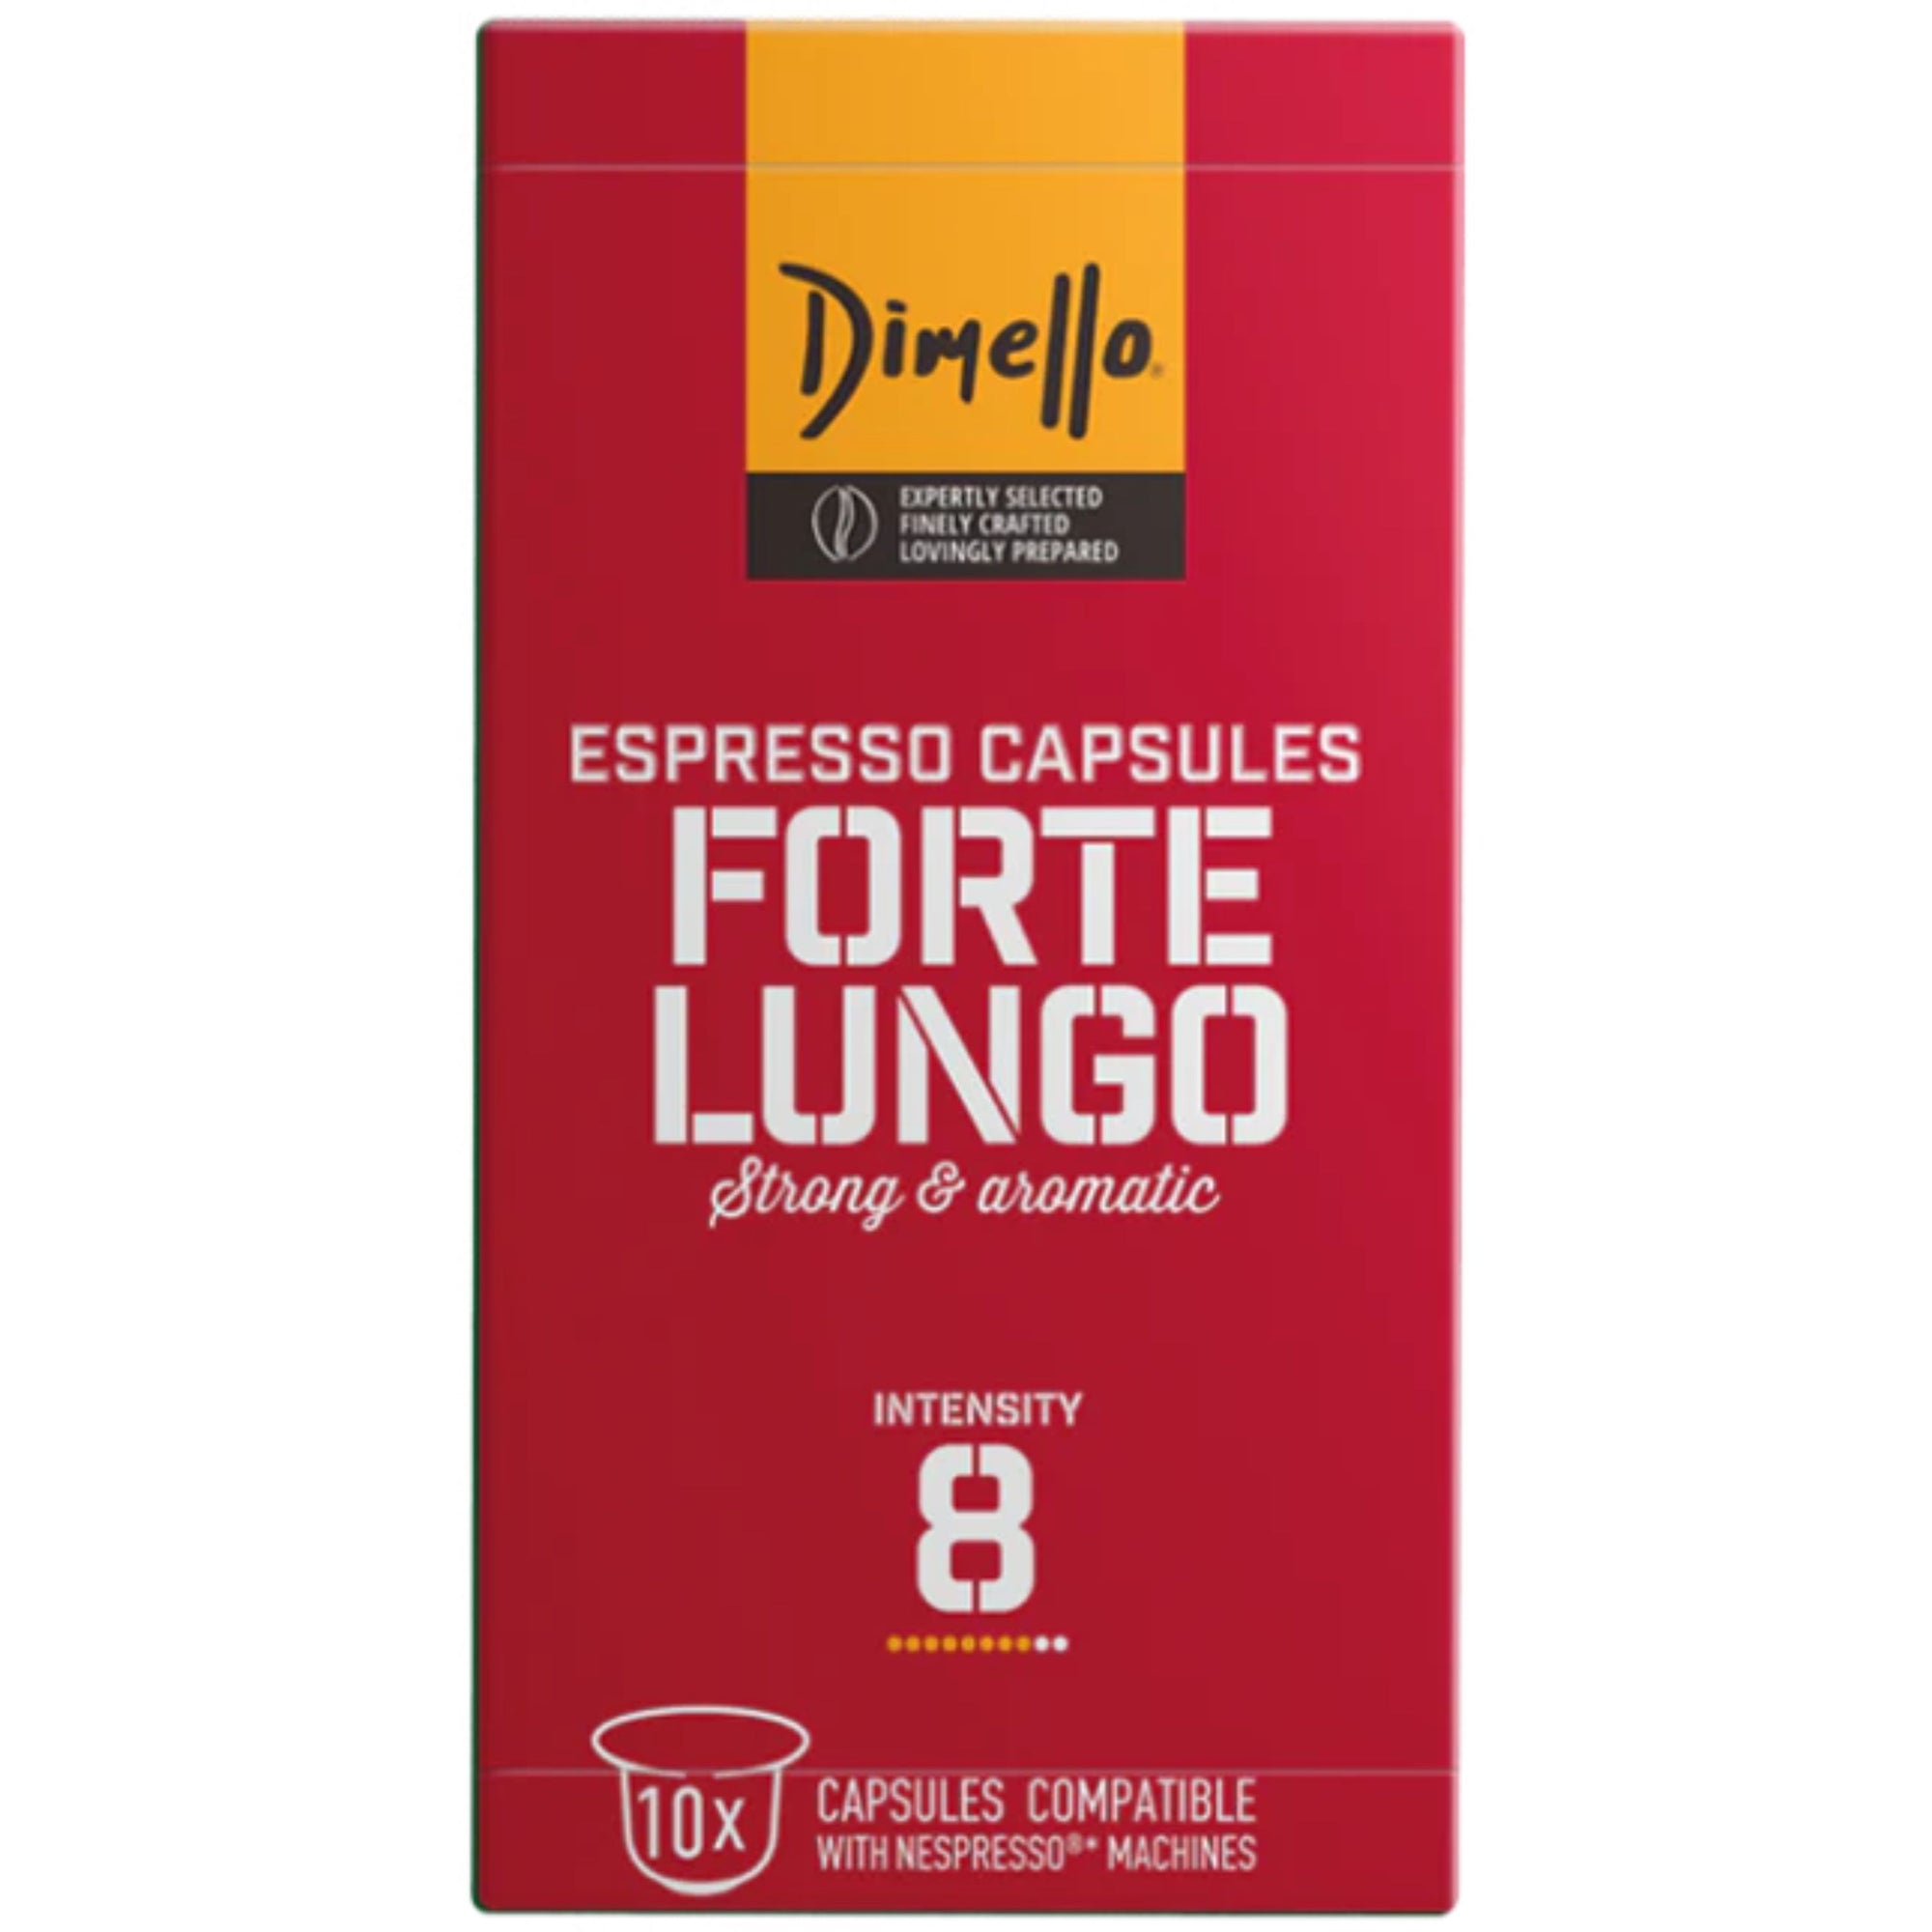 Dimello Espresso Capsules Forte Lungo